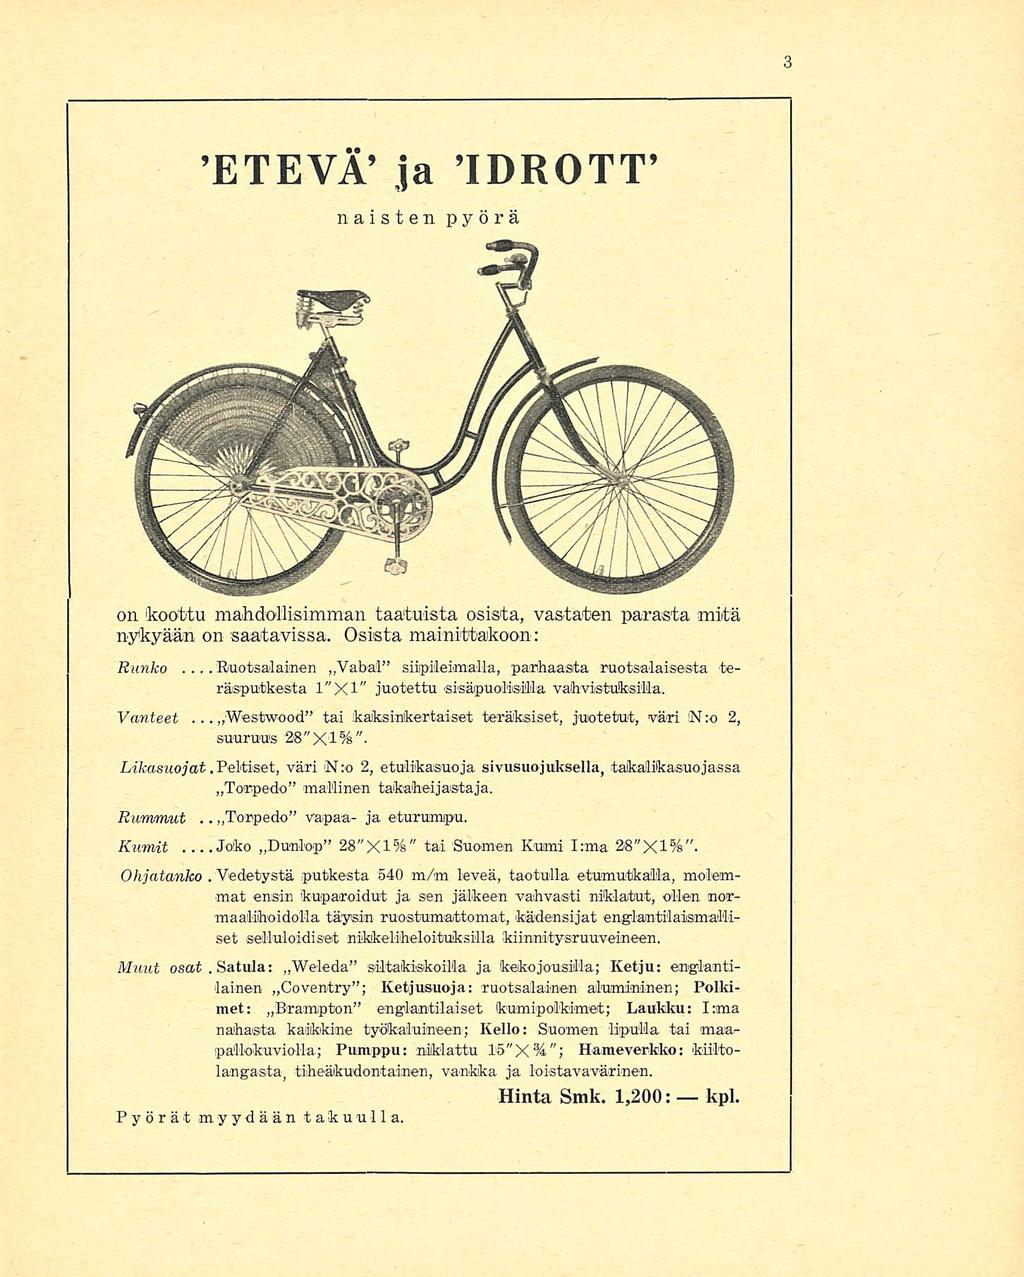 ...Joko 'Westwood Vedetystä Satula: ETEVĒ ja IDROTT naisten pyörä on 'koottu mahdollisimman taatuista osista, vastaten parasta mitä nykyään on saatavissa. Osista mainittakoon: Runko.